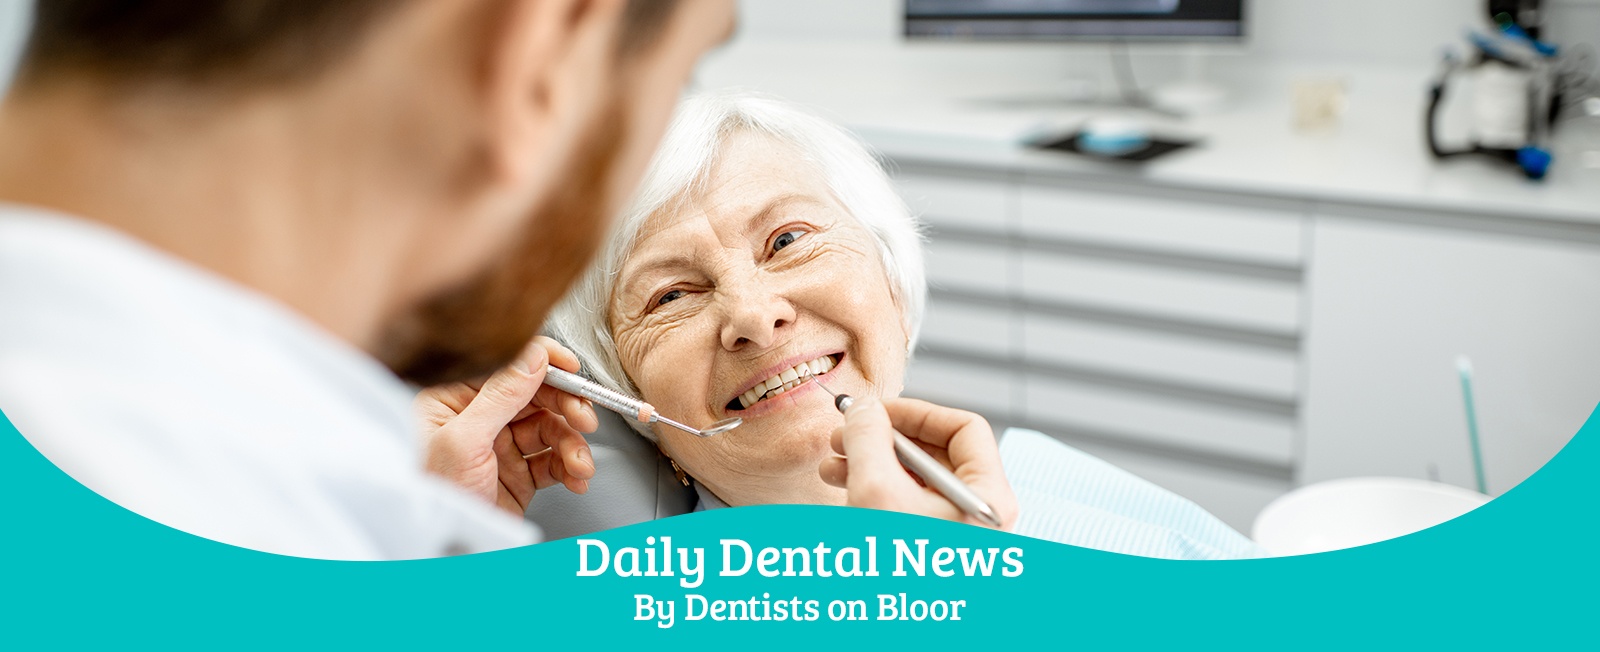 Daily Dental News